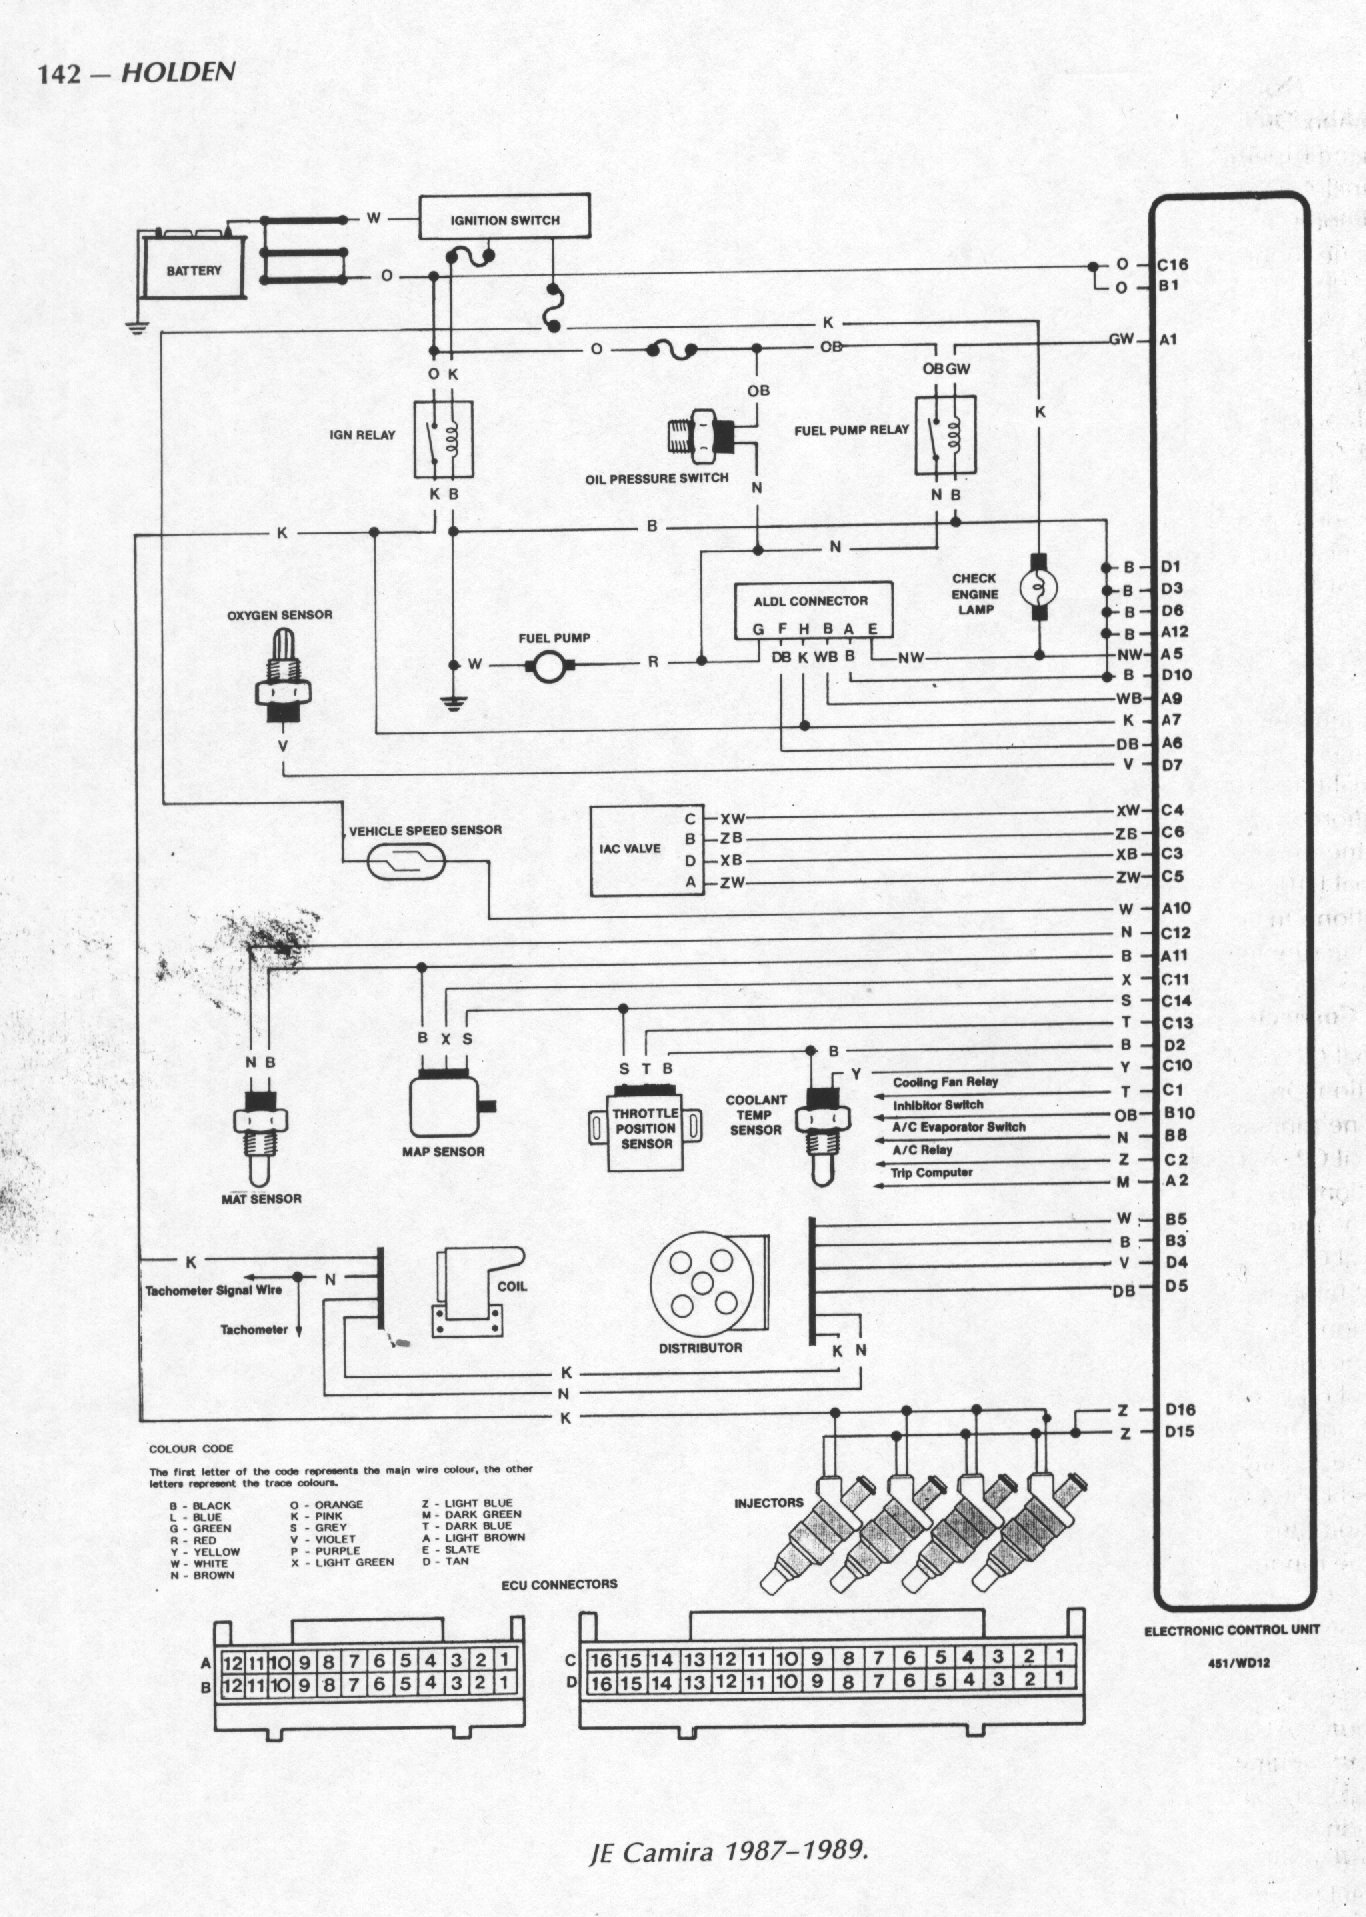 page142 ecu wiring.jpg